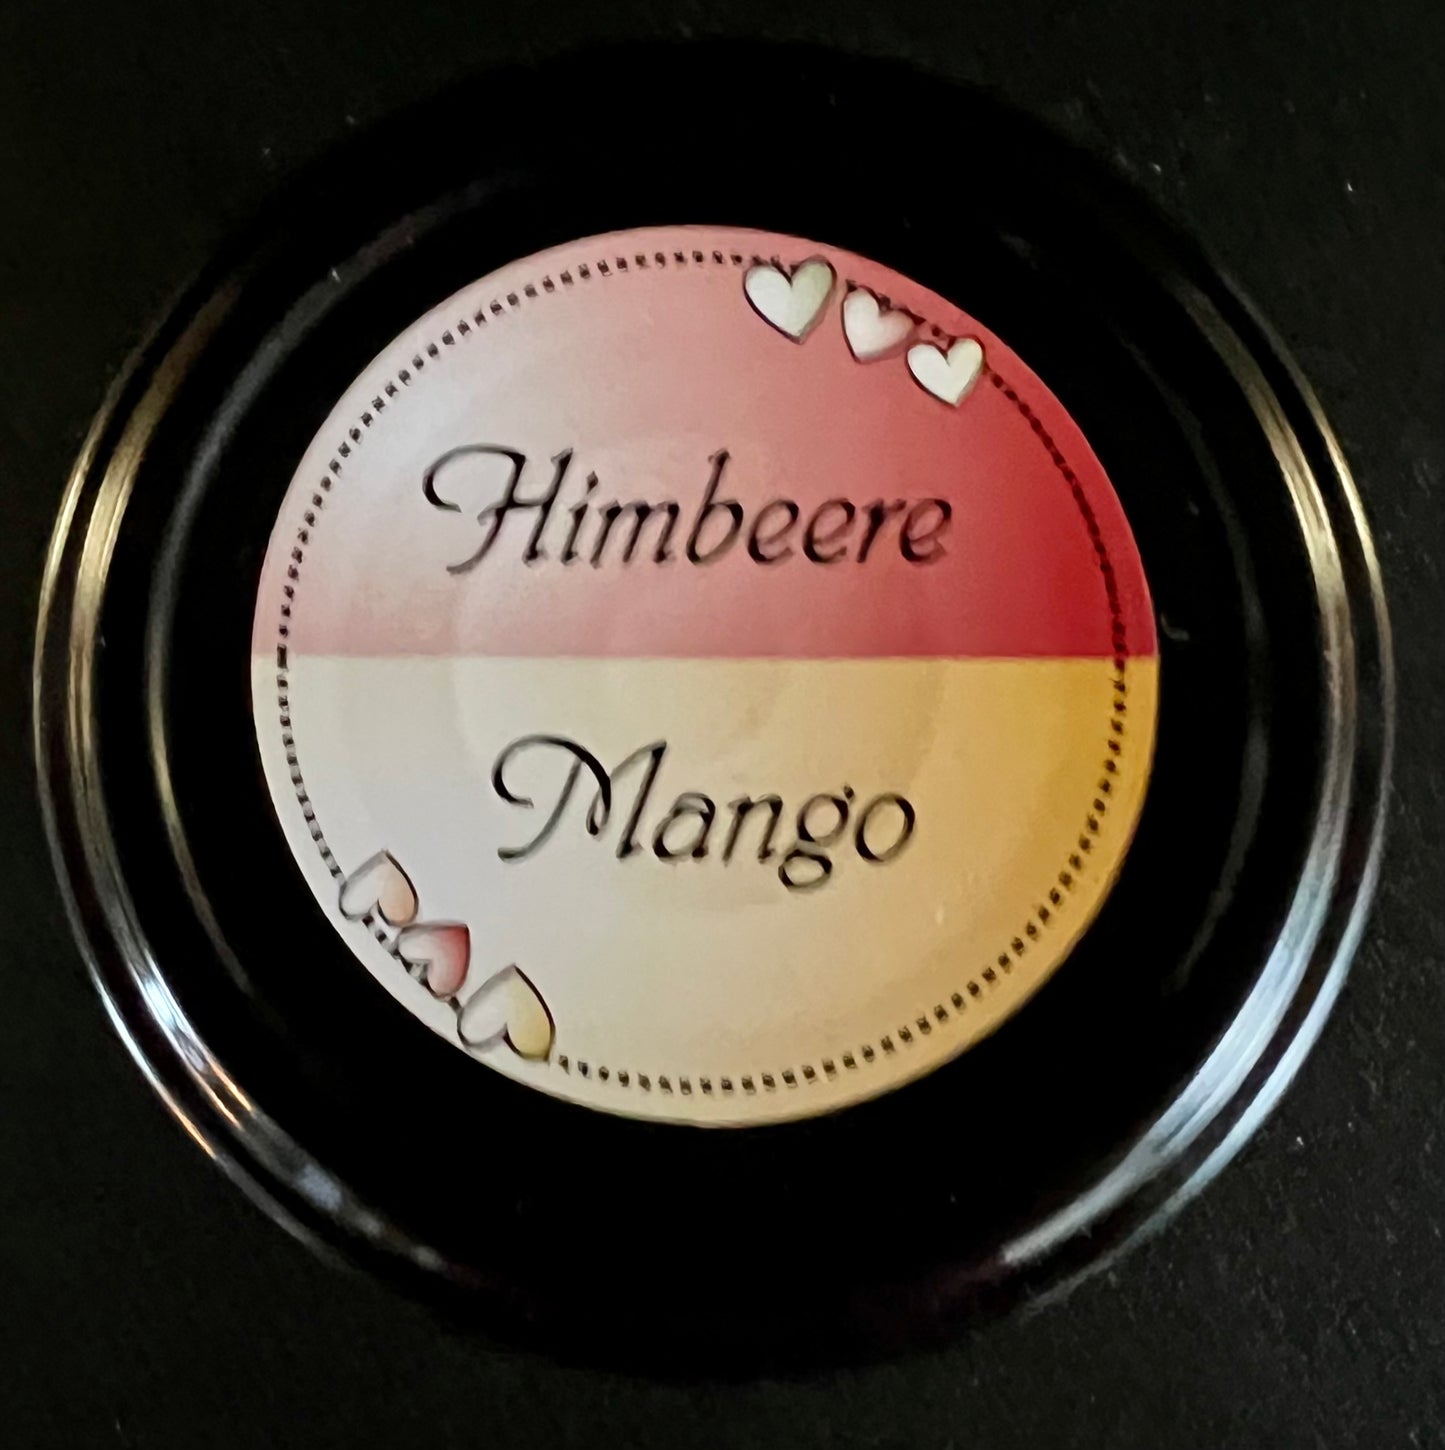 Himbeere - Mango